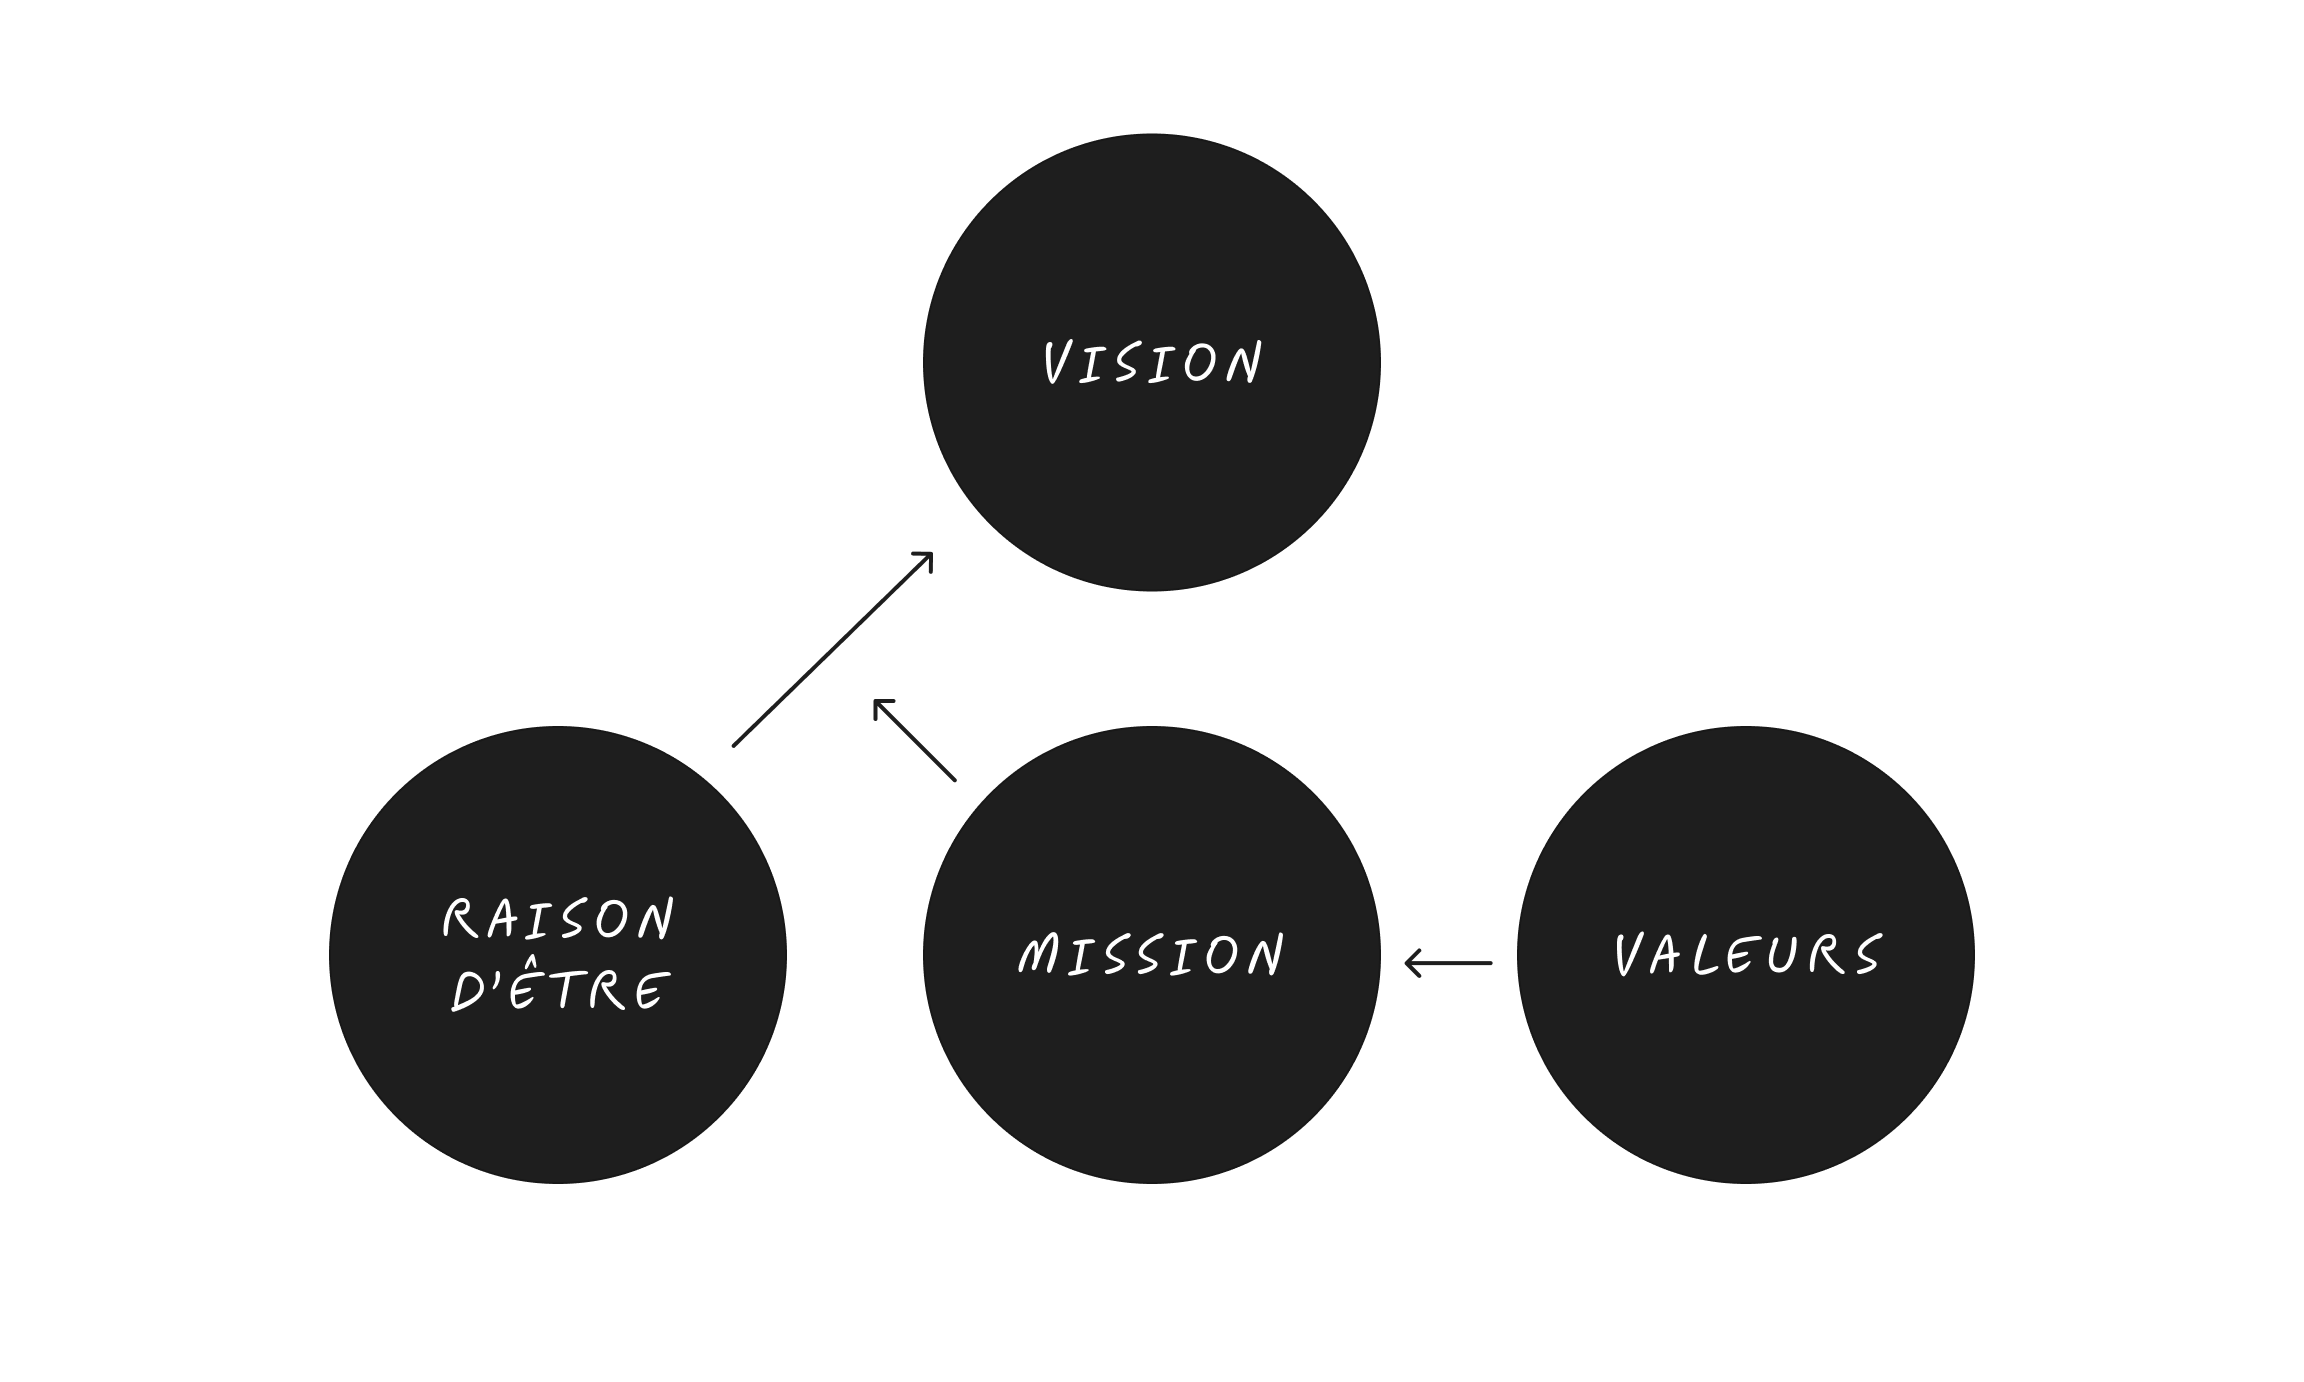 Schéma des 4 piliers de votre coeur de marque : raison d'être, vision, mission, valeurs